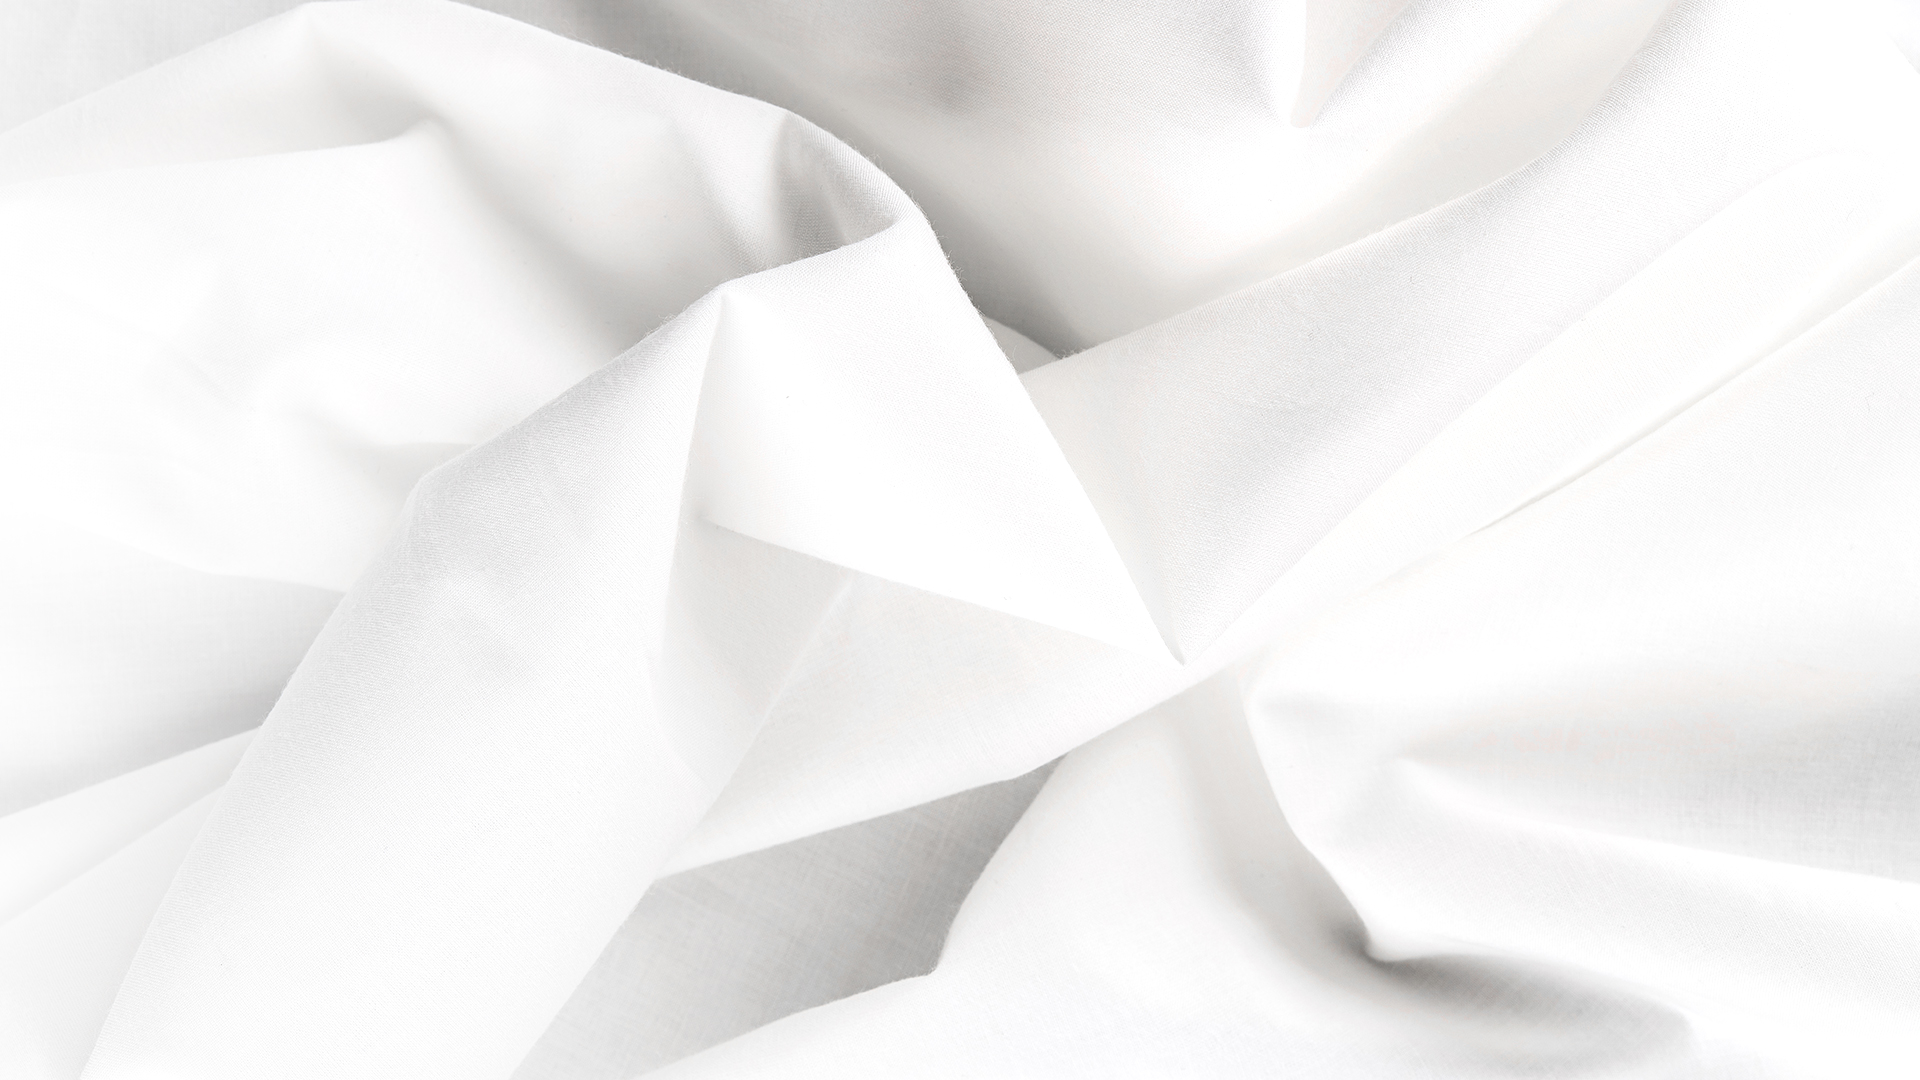 ทำยังไงให้ผ้าขาวสะอาด ปราศจากเชื้อไวรัส